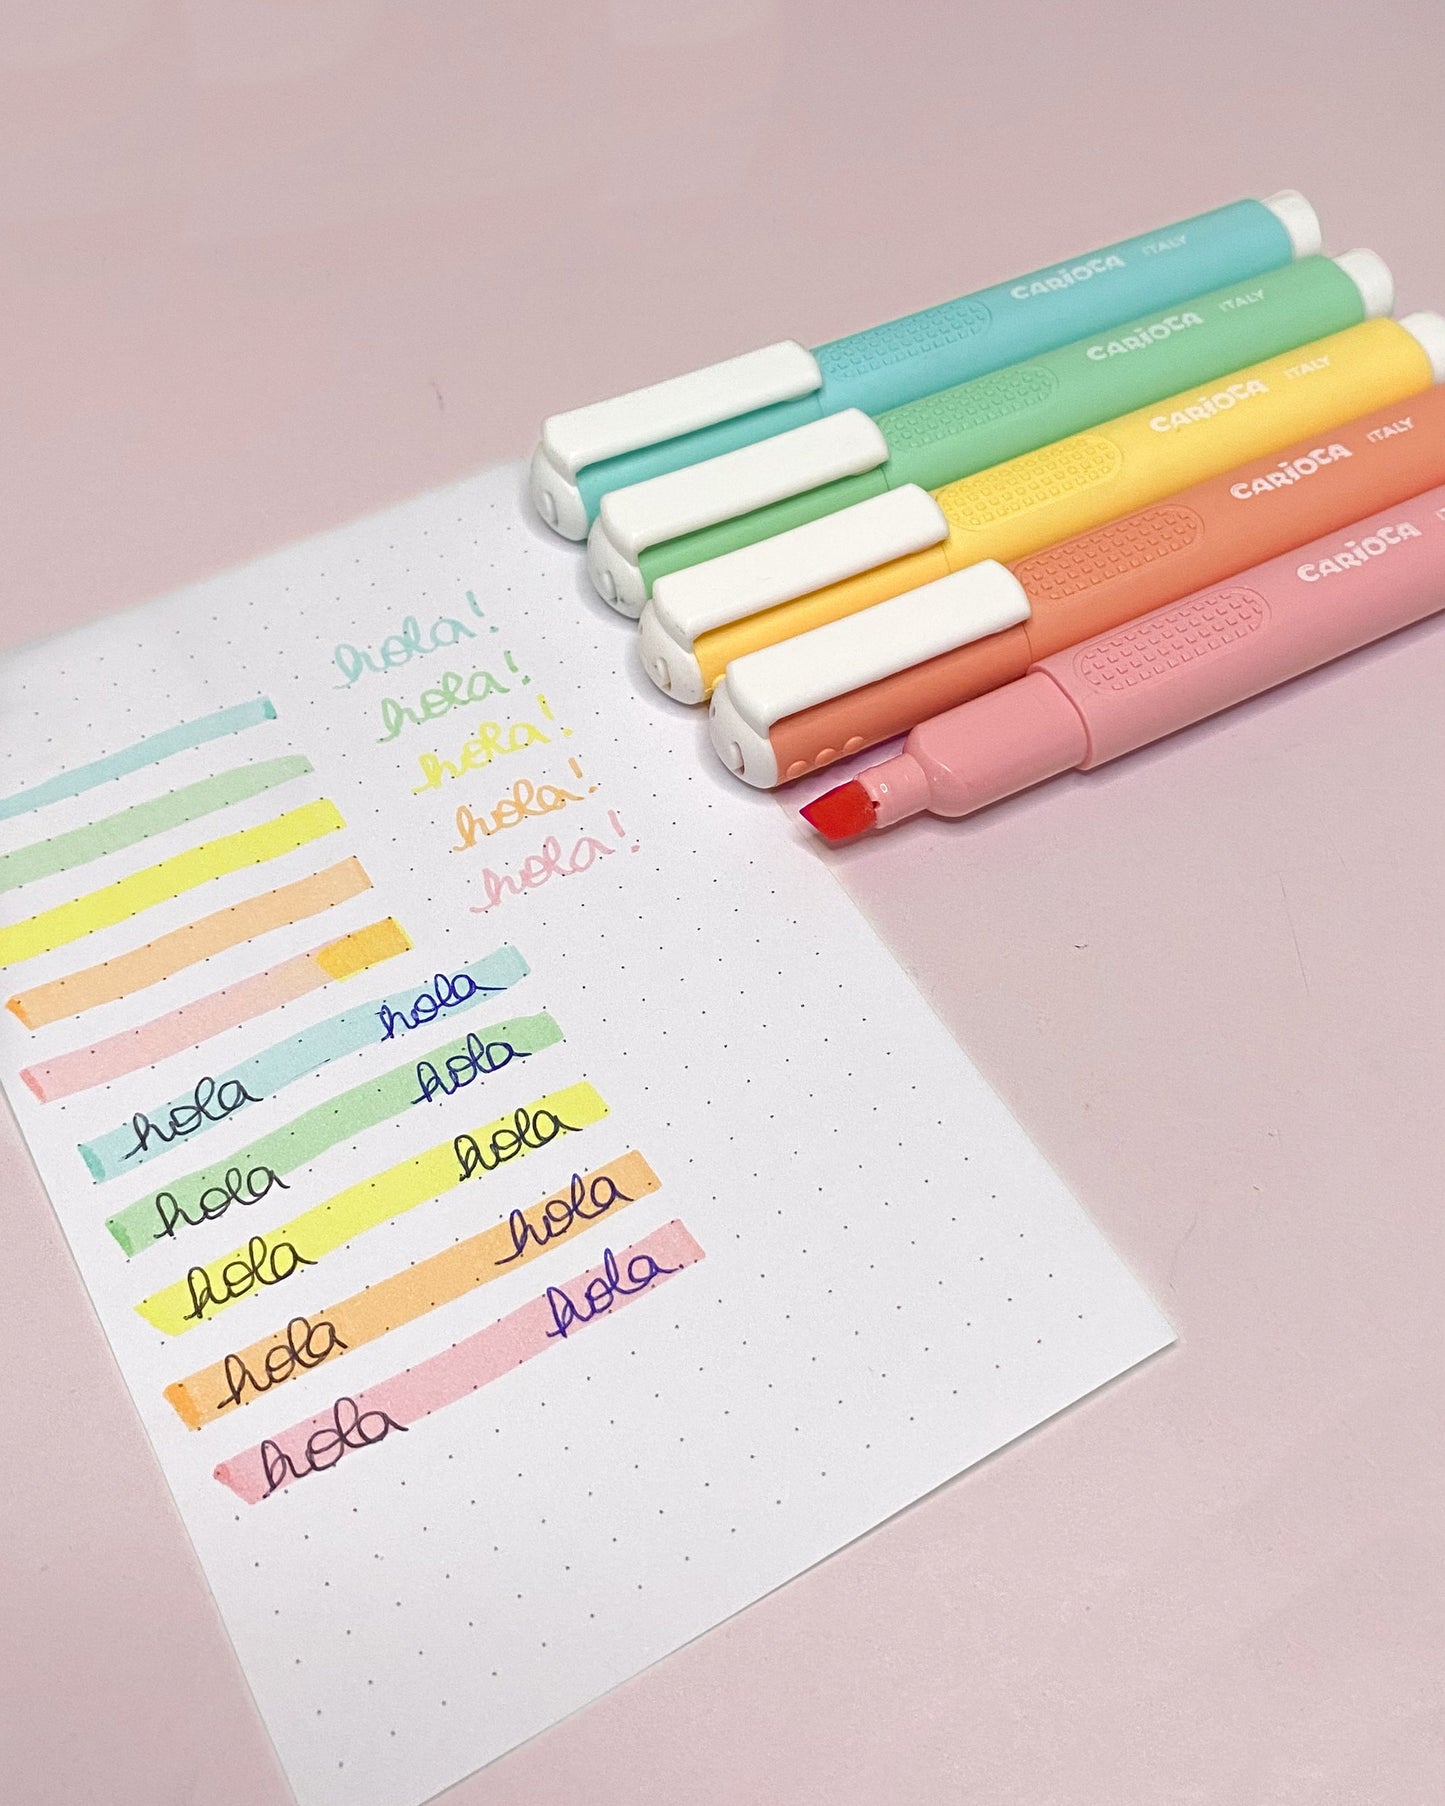 swatch de los colores de los lápices destacadores pastel